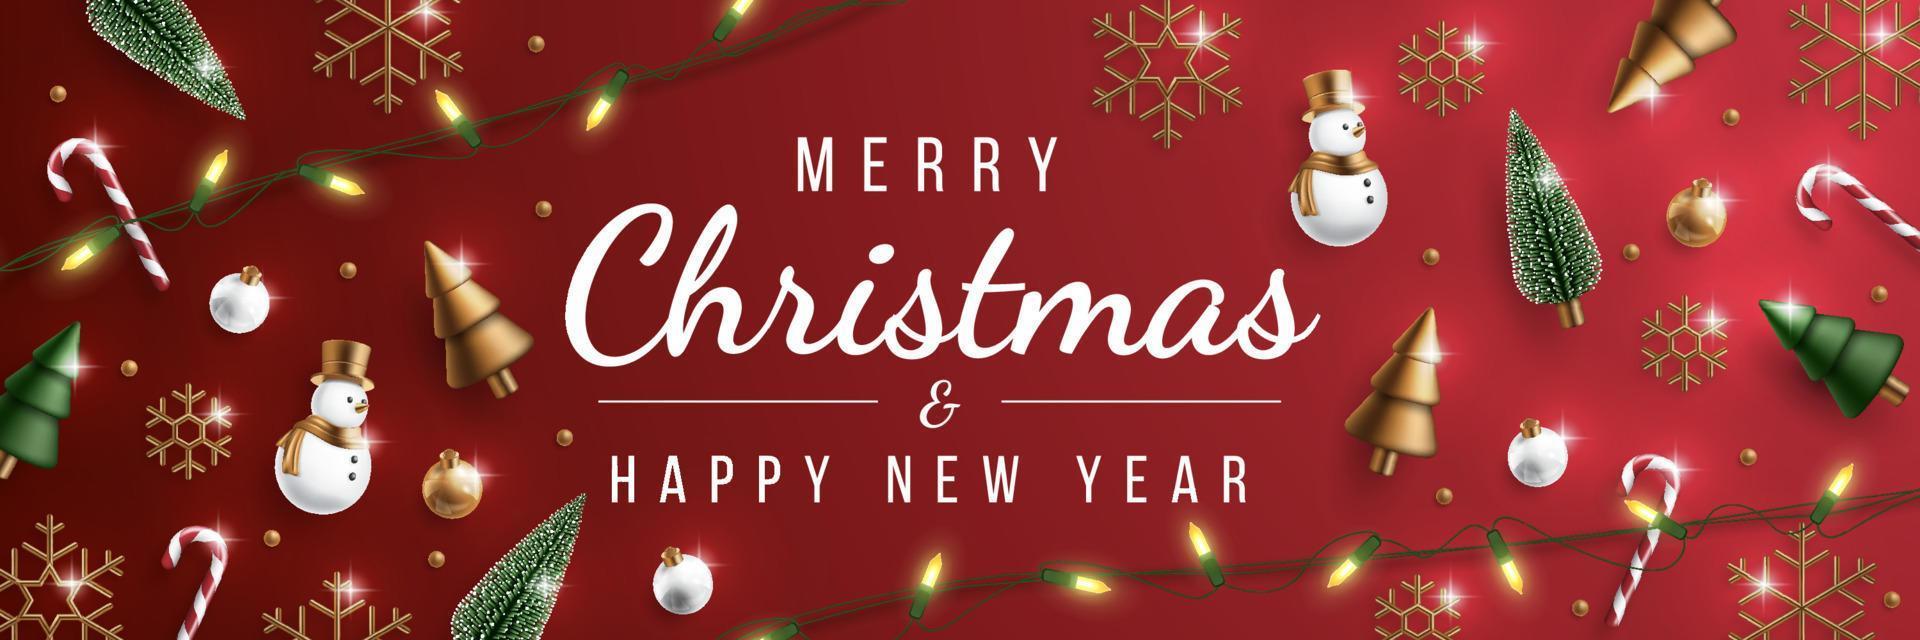 Frohe Weihnachten-Banner mit realistischer Weihnachtsverzierung. Weihnachtskugel, Baum, Schneemann und Lichterkette-Vektor-Illustration. vektor